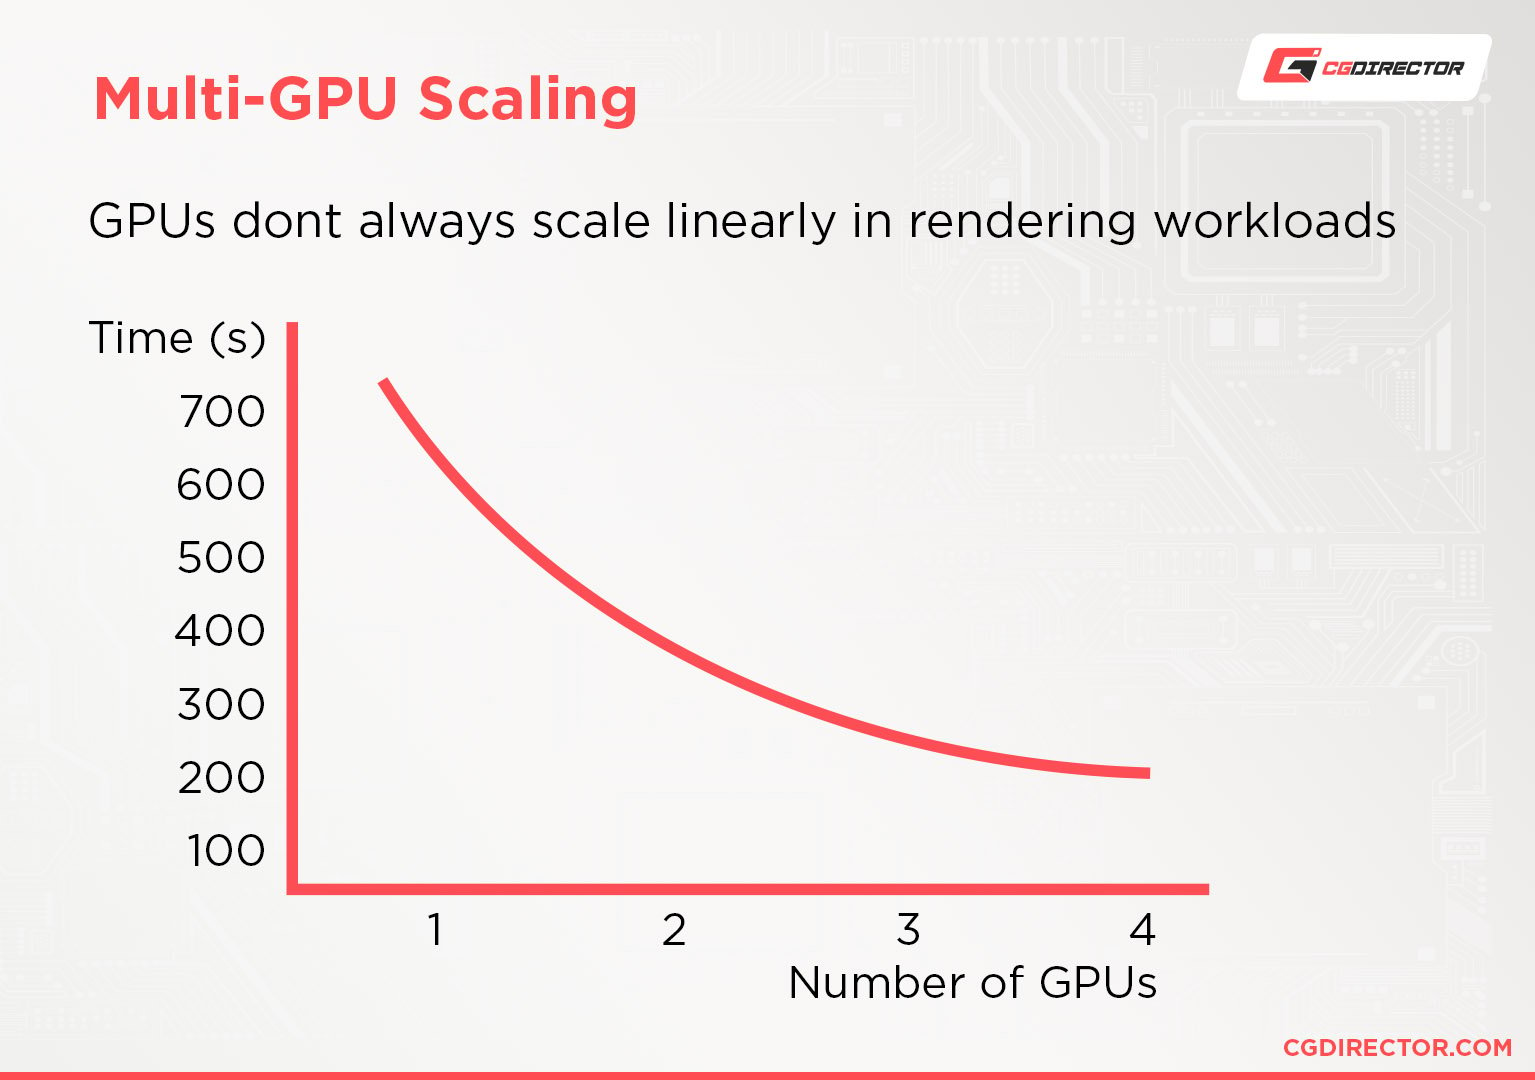 Multi-GPU scaling